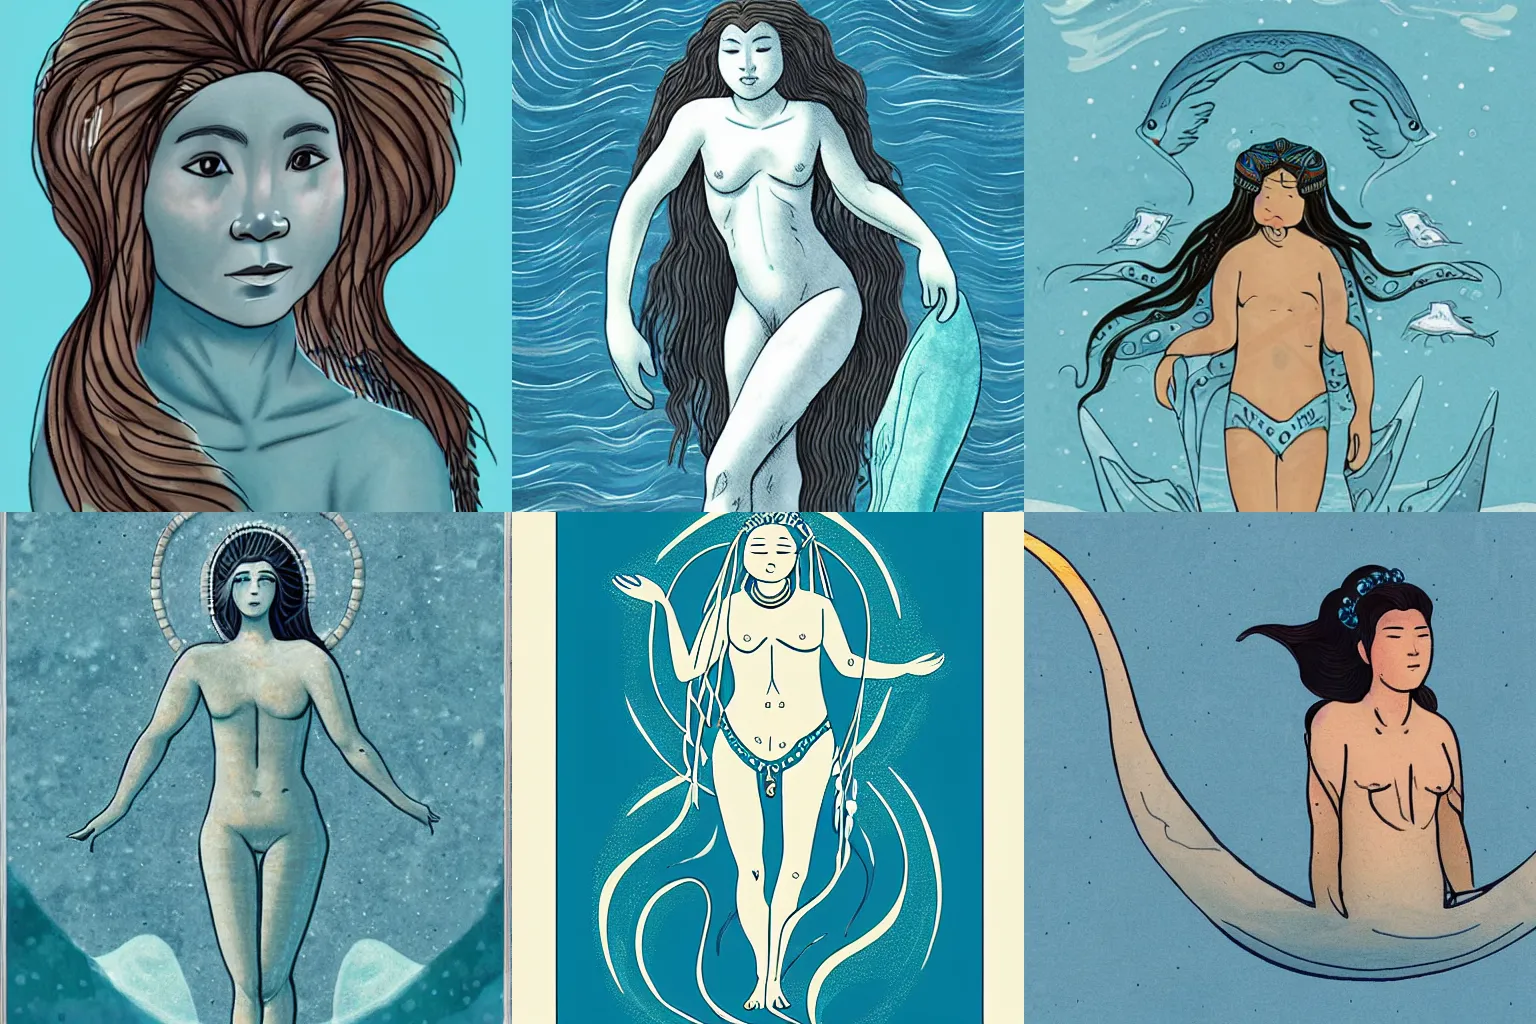 Prompt: sedna : : inuit goddess of the ocean : : illustration